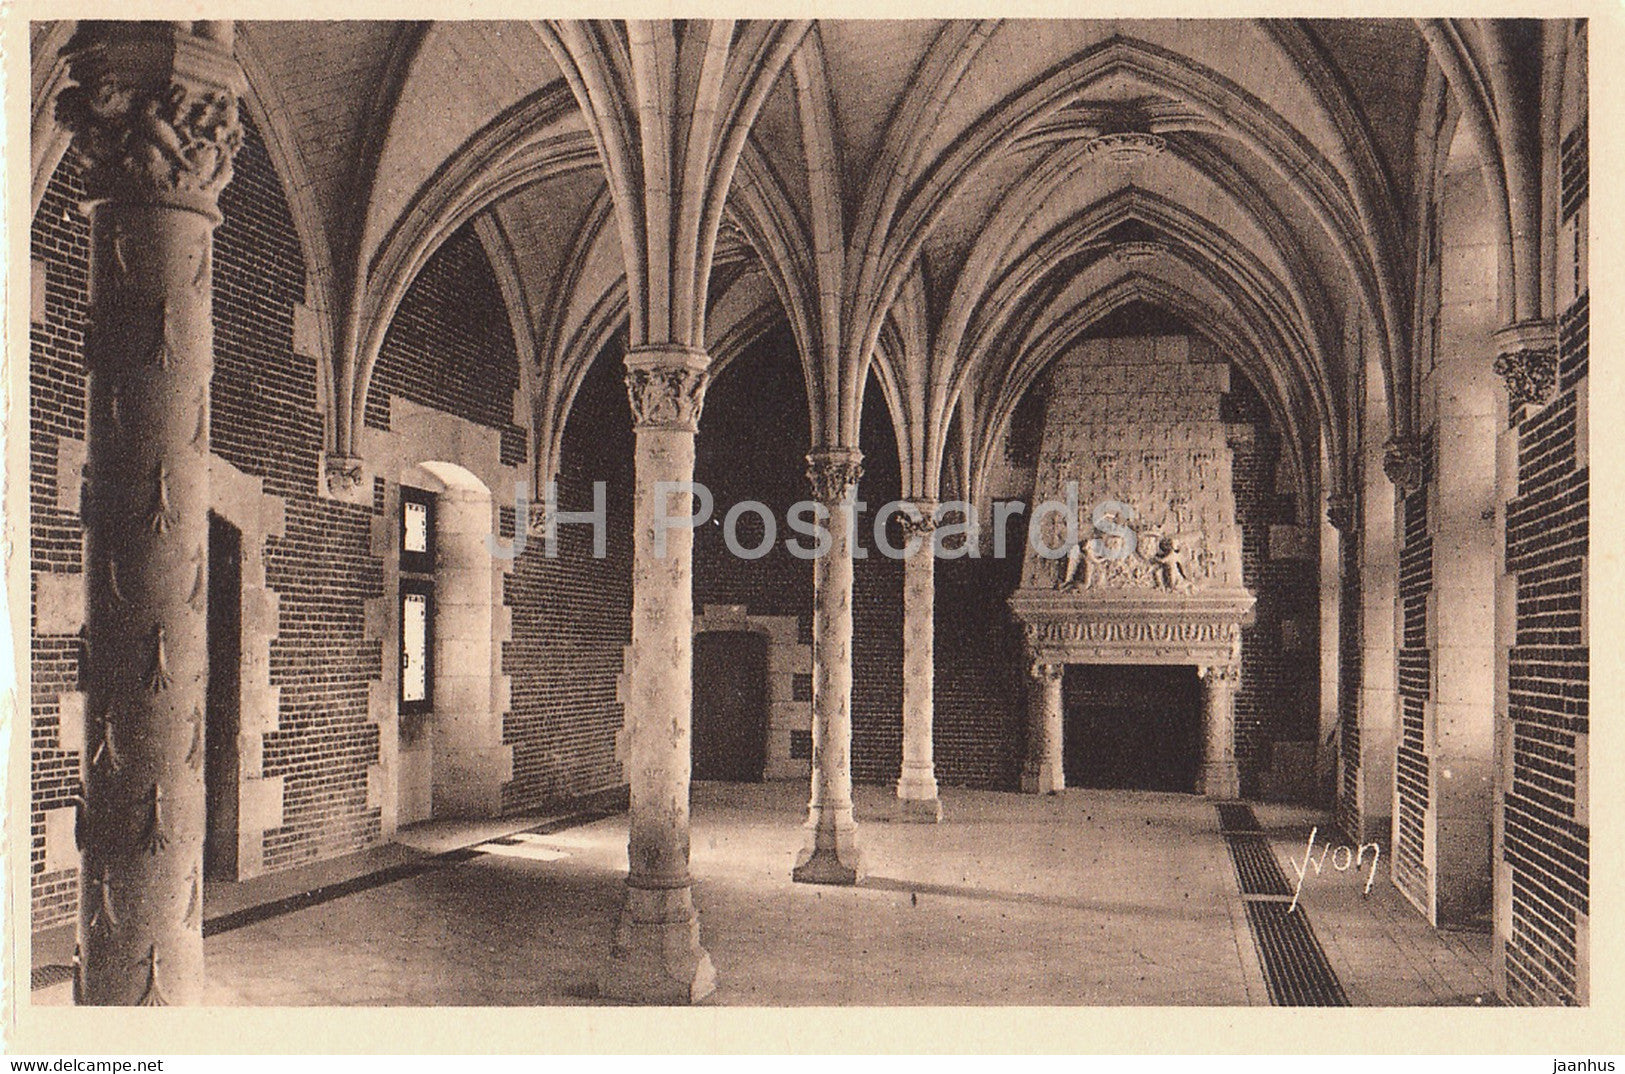 Chateau d'Amboise - La Salle des Etats - 99 - castle - old postcard - France - unused - JH Postcards